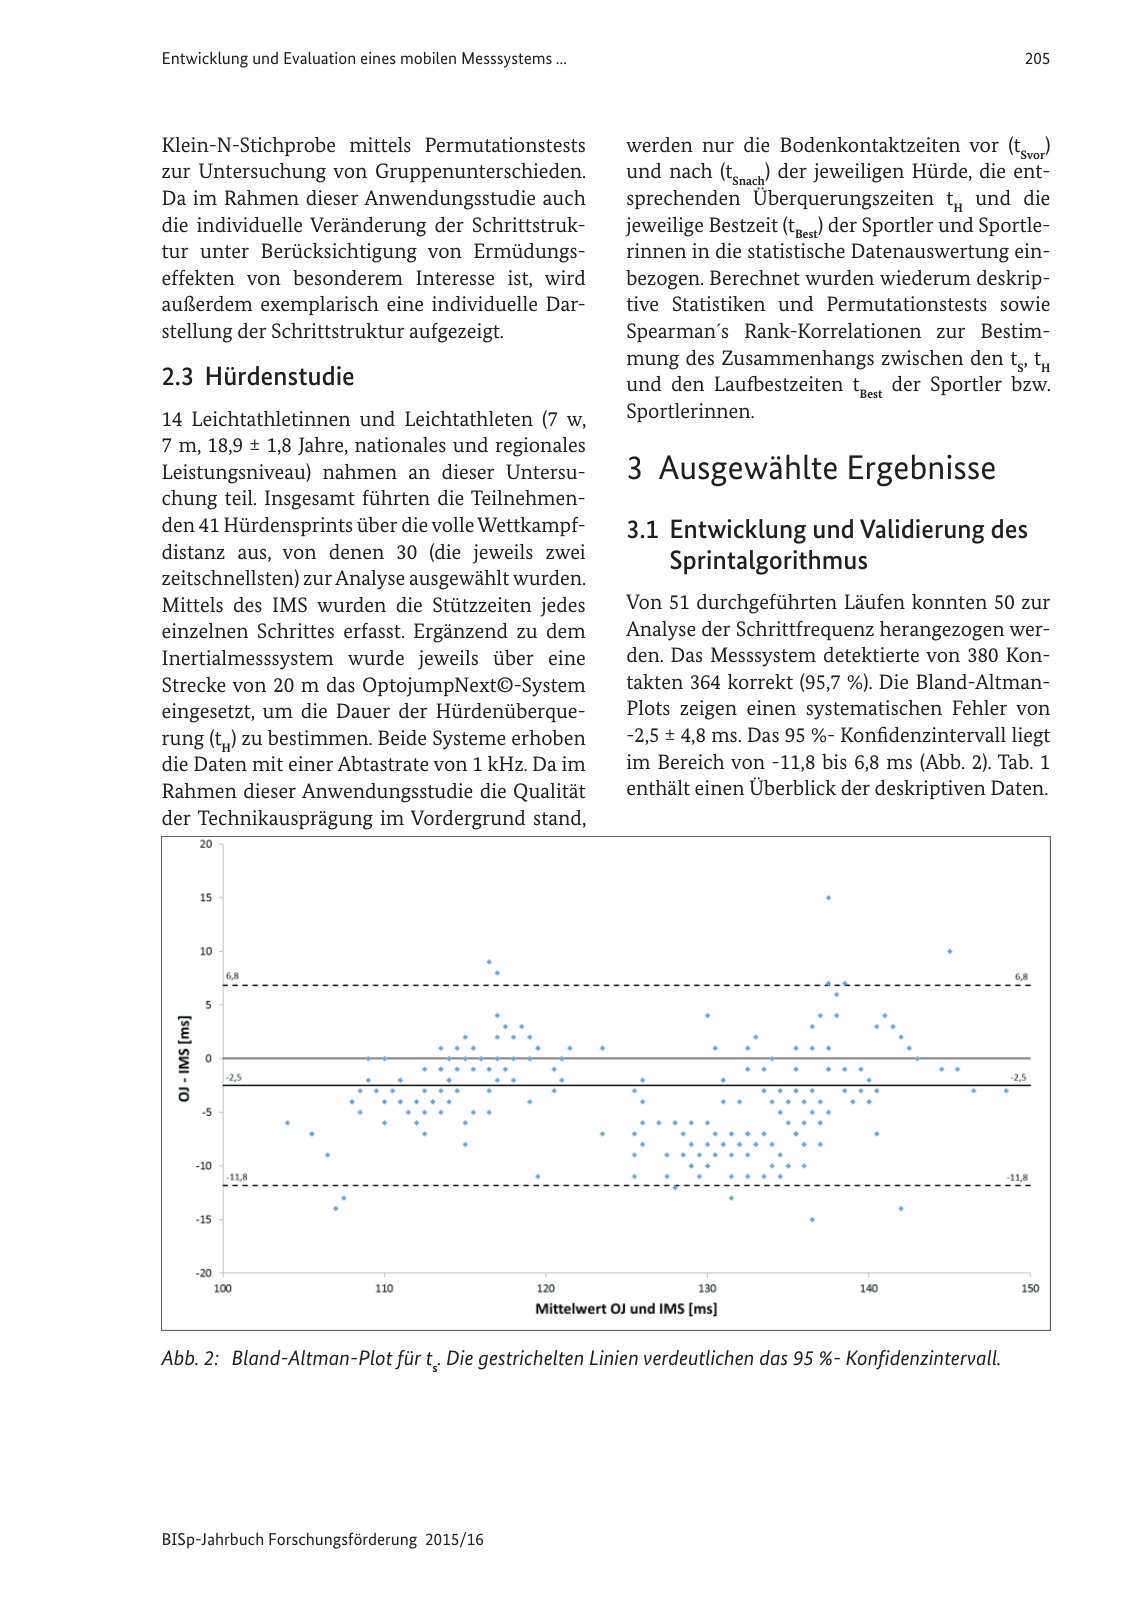 Vorschau BISp-Jahrbuch Forschungsförderung 2015/16 Seite 207